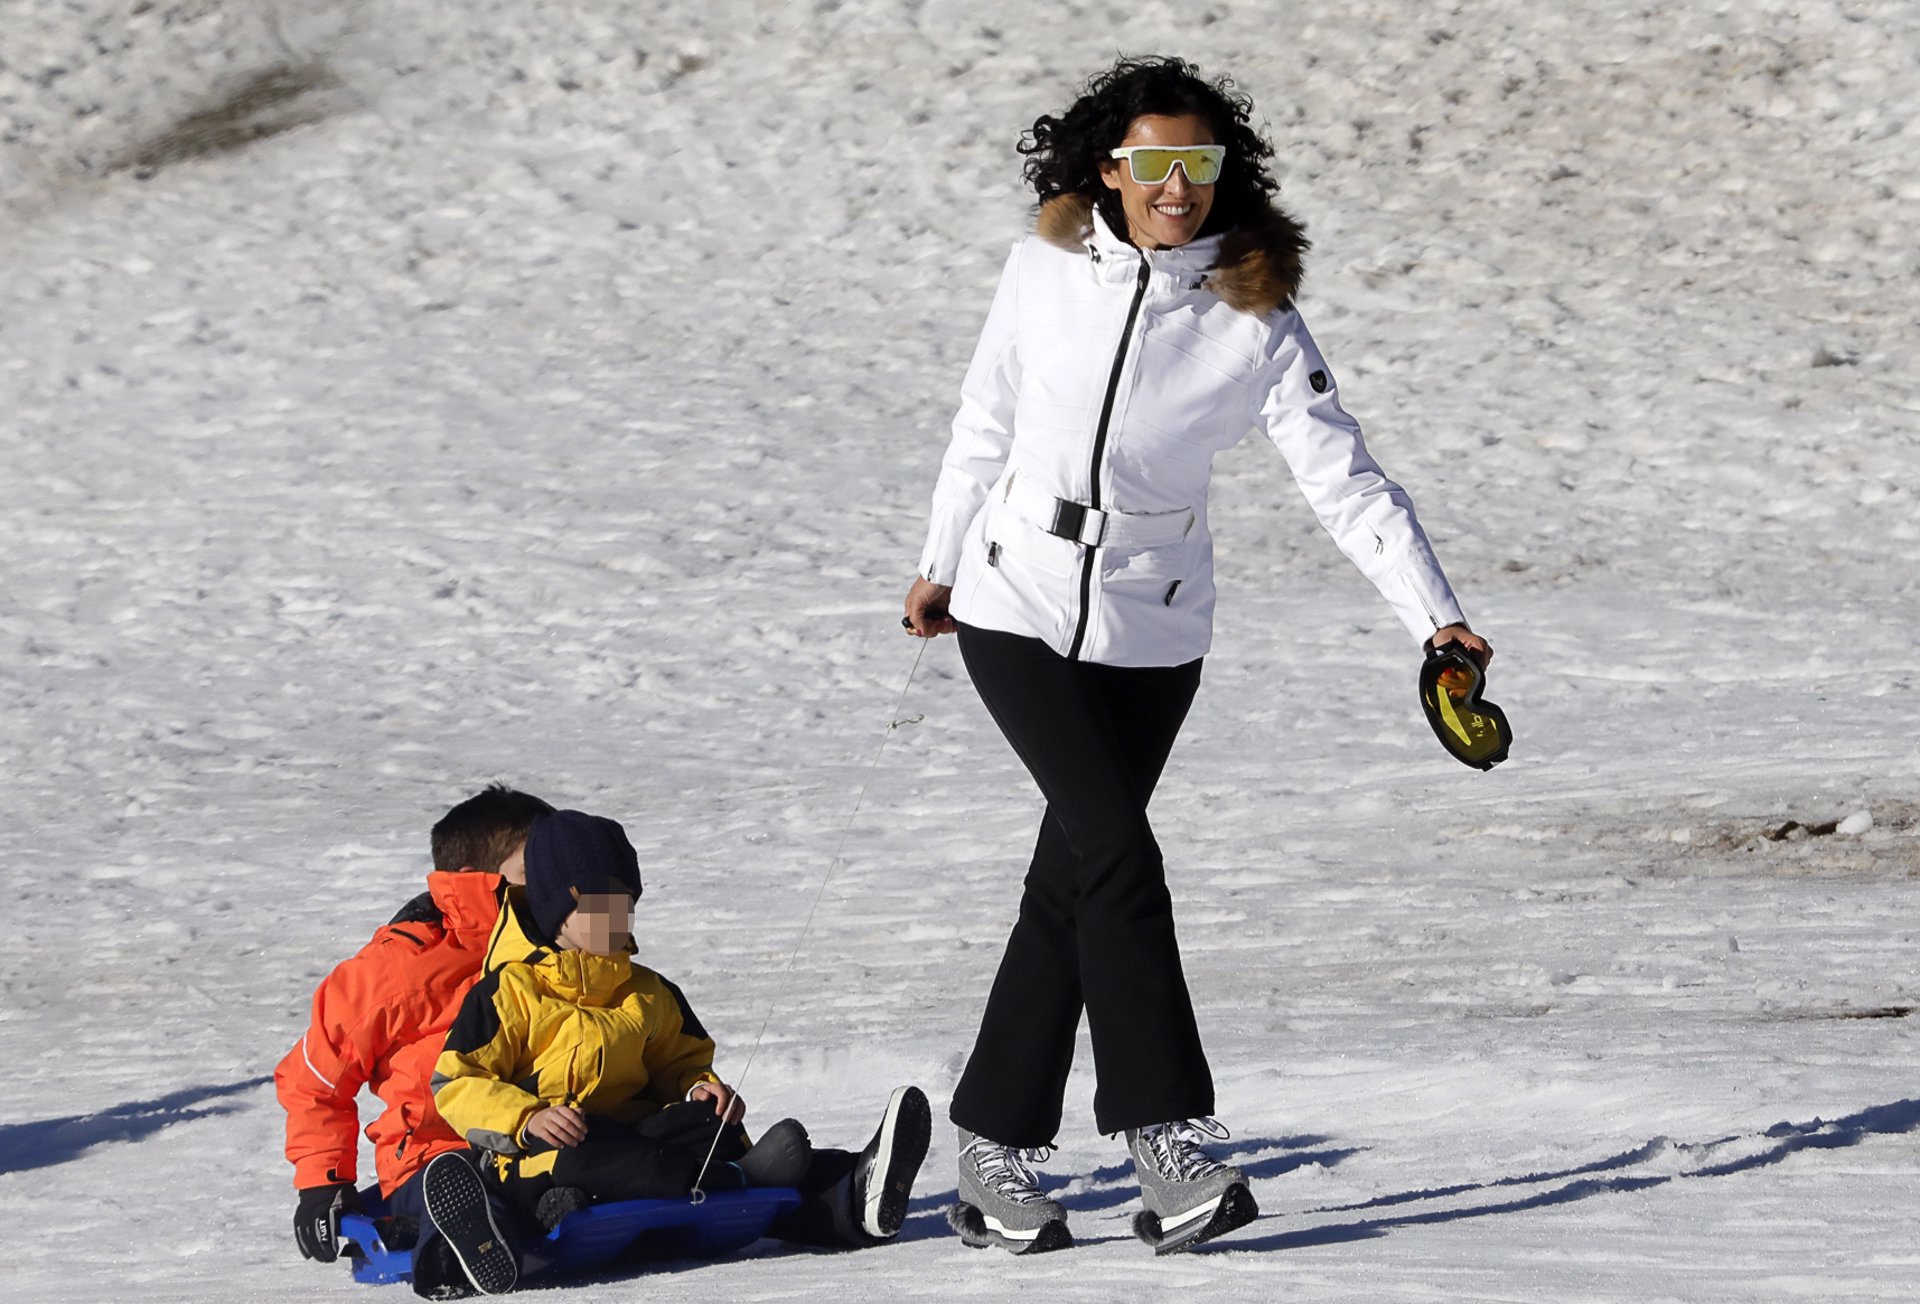 blanca romero disfruta de su hijo Martín en la nieve tirando de un trineo con otro niño